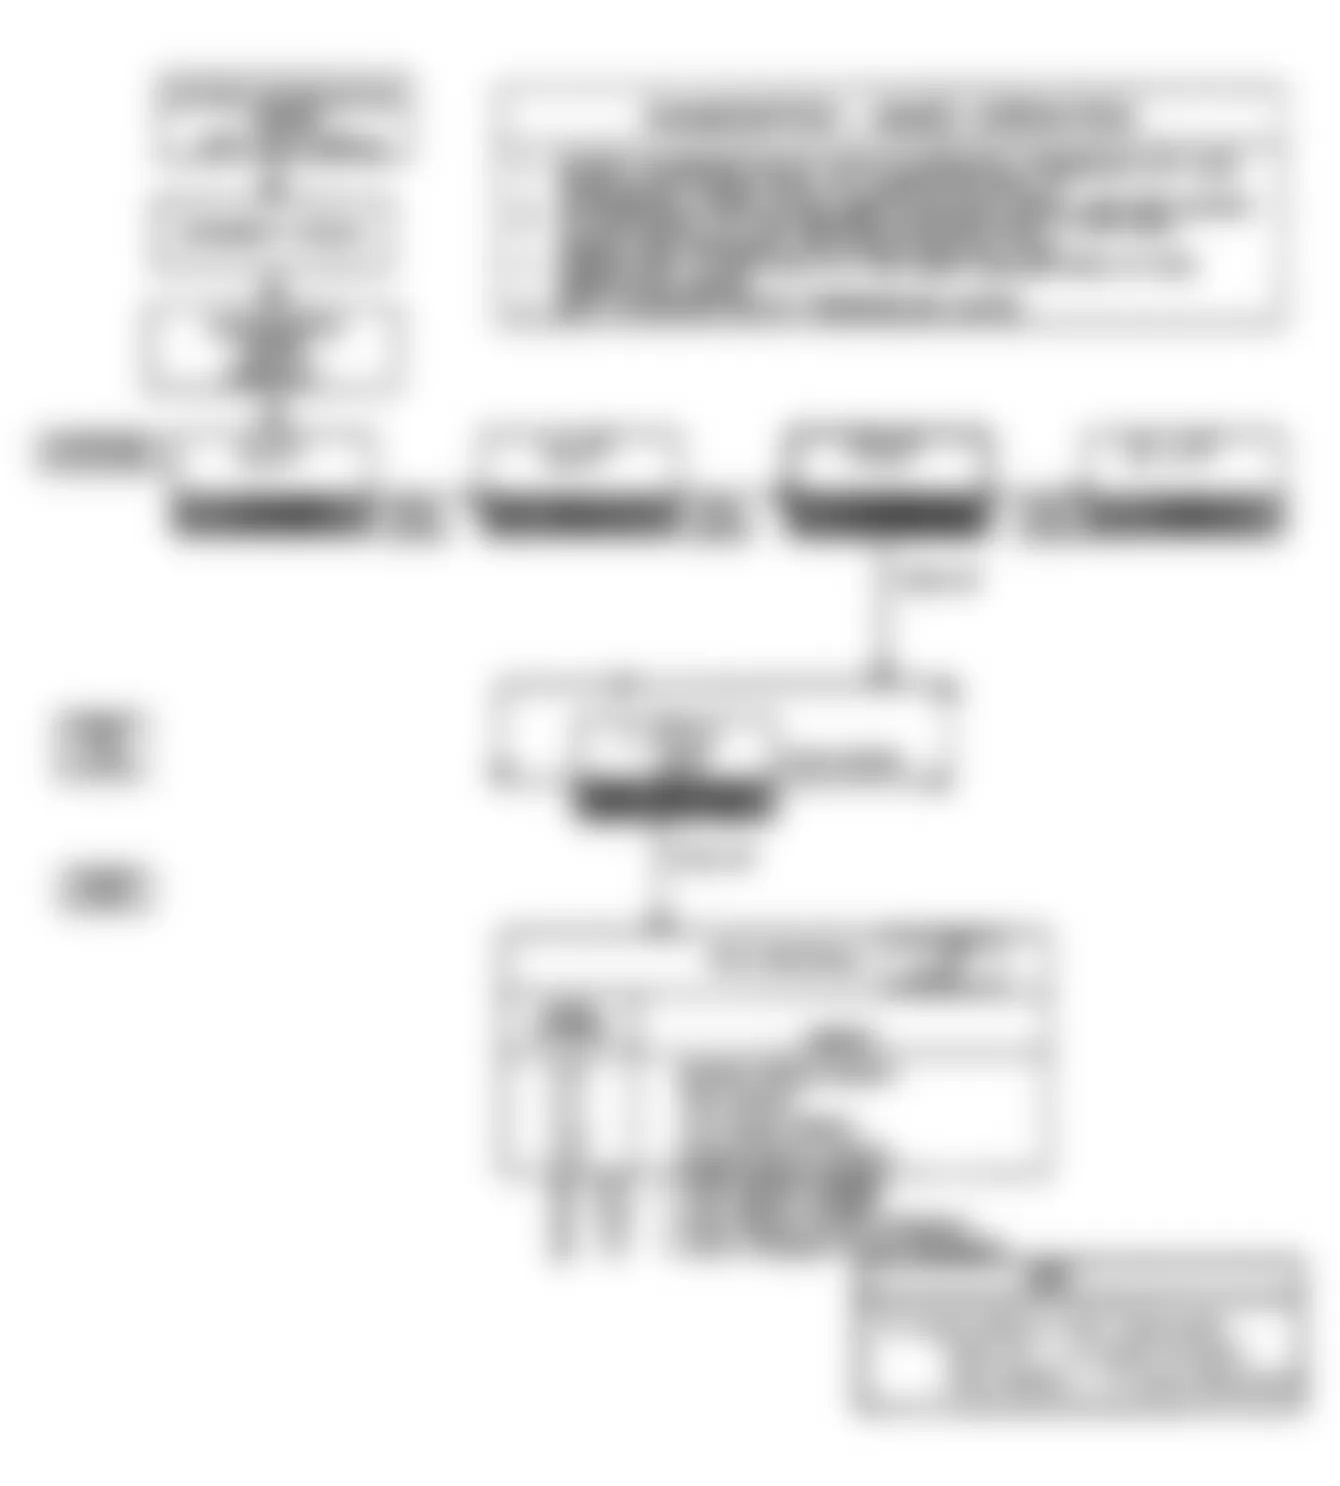 Buick Reatta 1990 - Component Locations -  Diagnostic ECM Flow Chart (5 of 6)